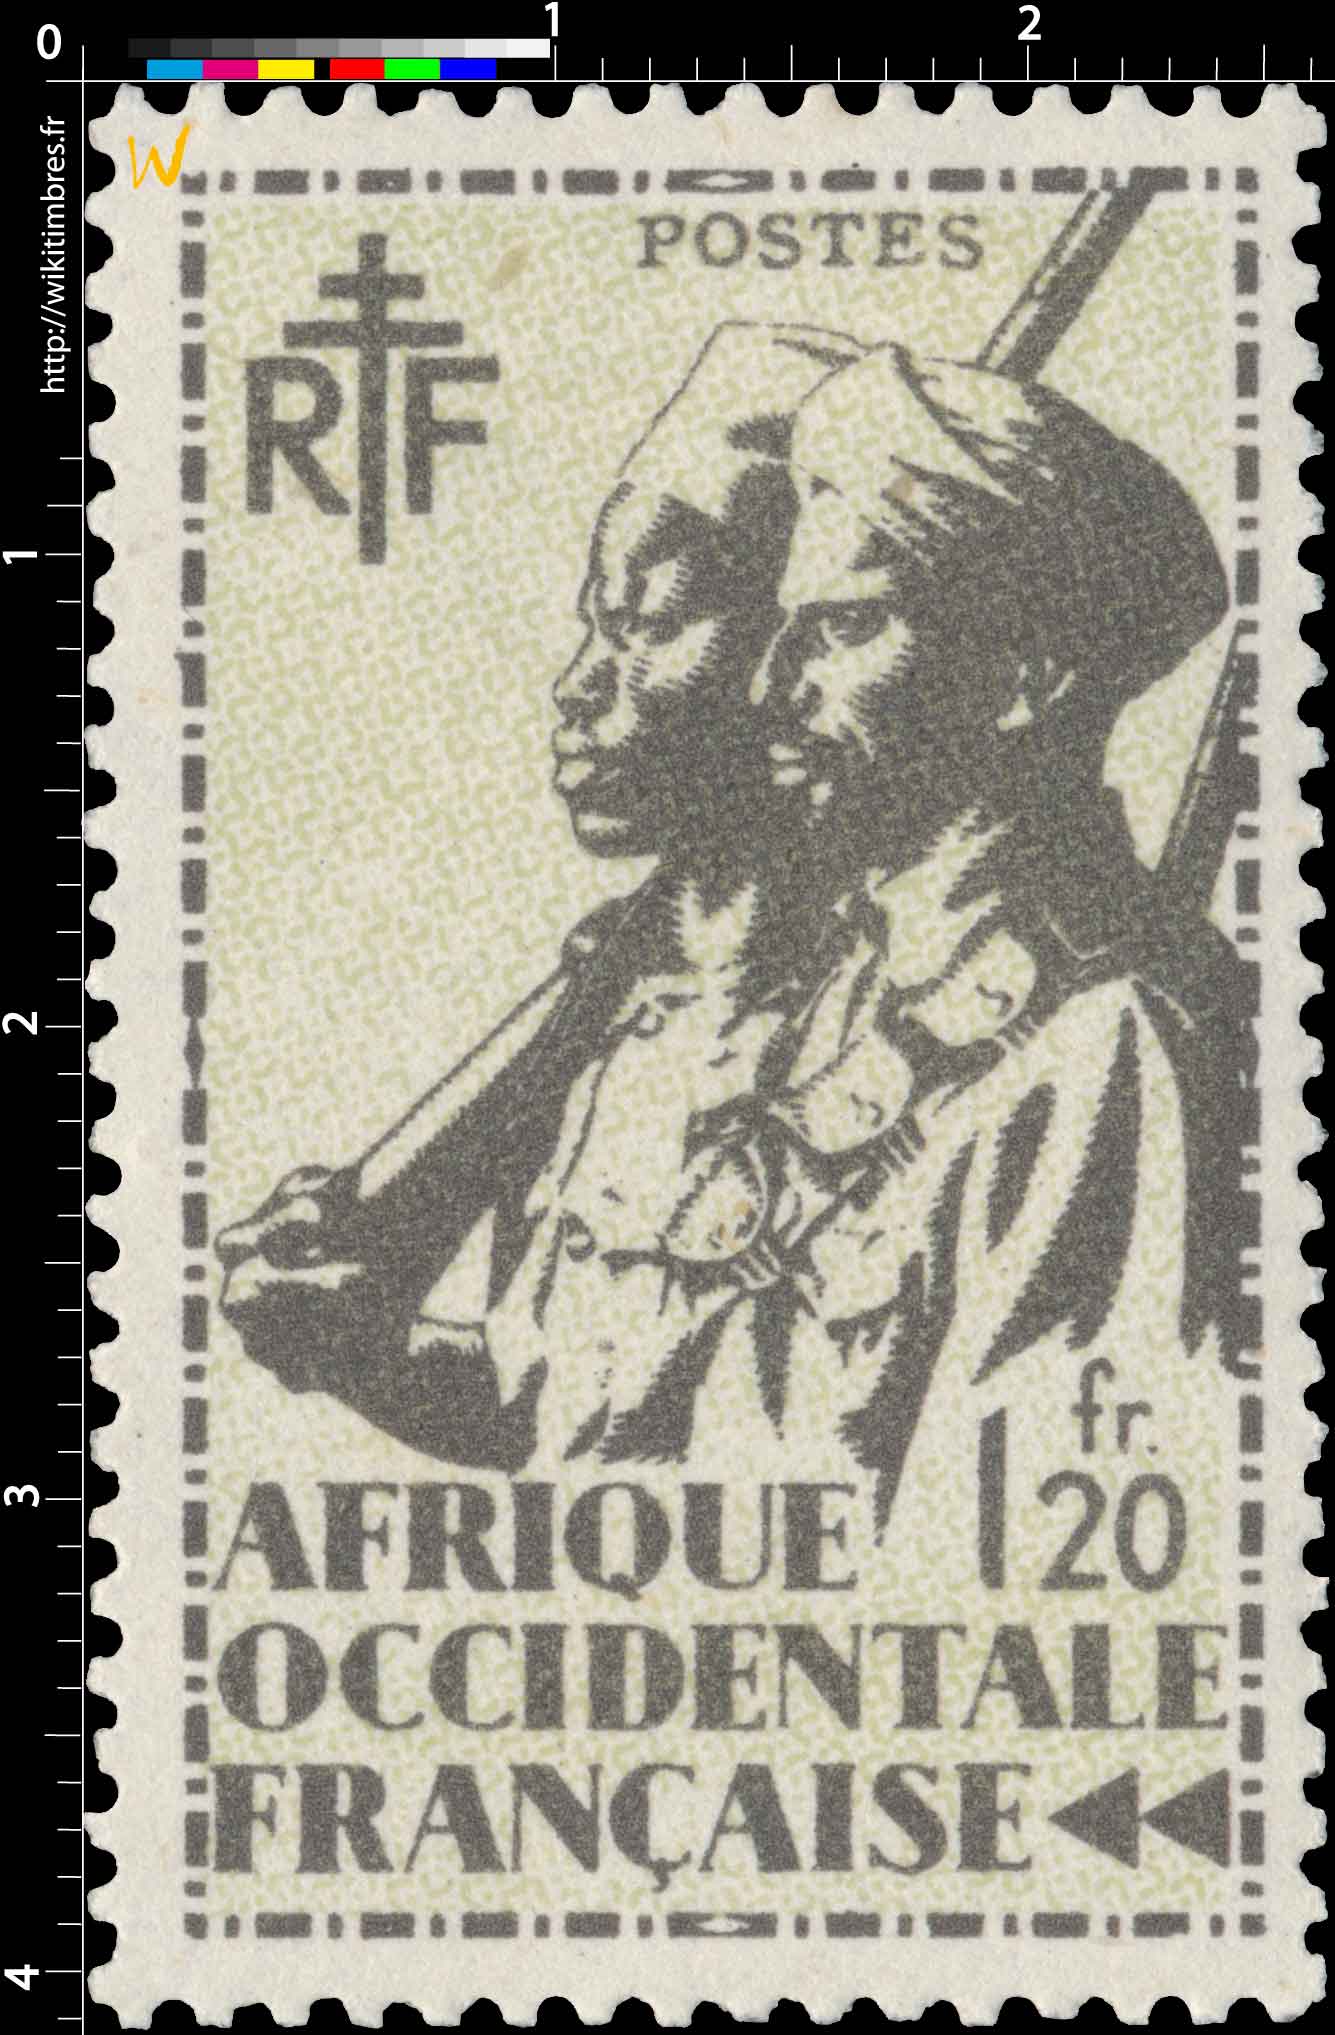  Afrique Occidentale Française - type tirailleur Sénégalais et cavalier Maure